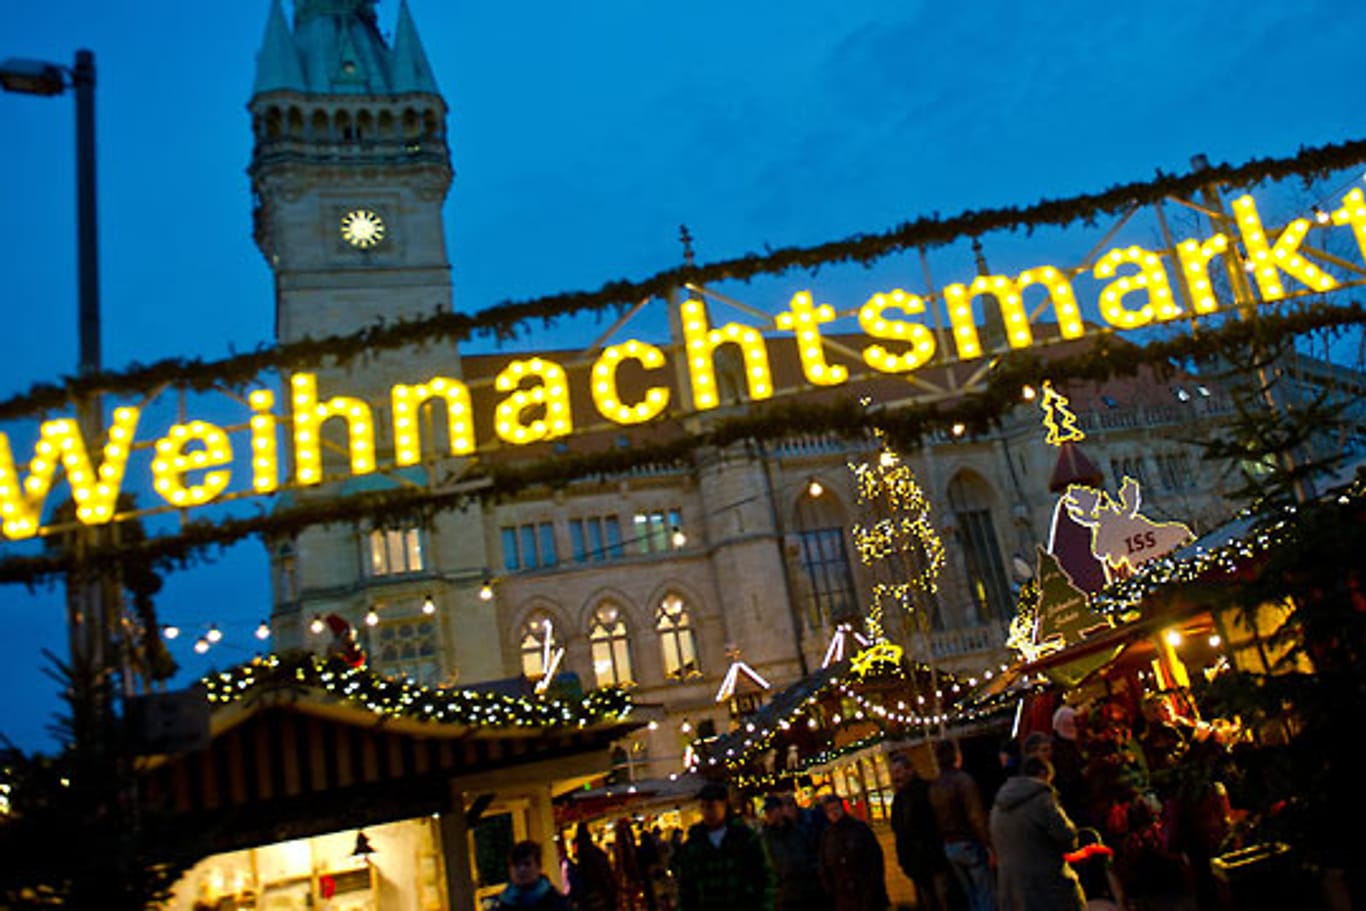 Nicht sehr kalt sieht auch der Weihnachtsmarkt in Braunschweig aus.